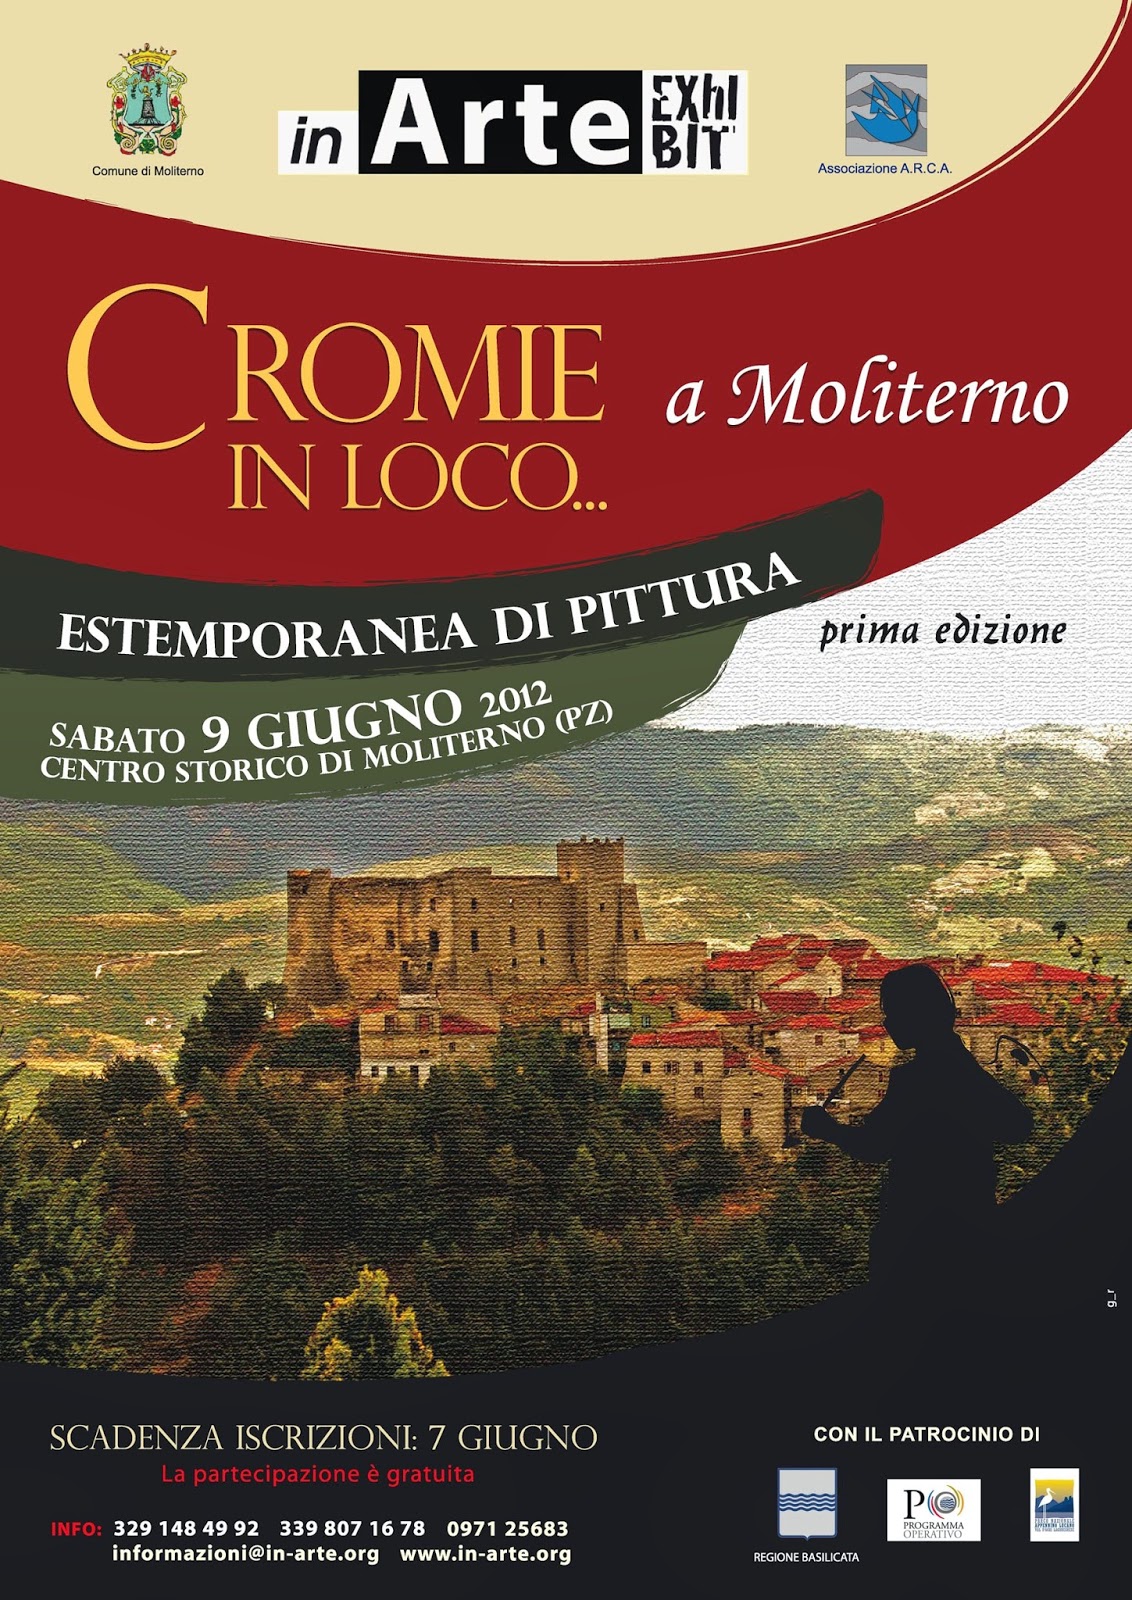 http://inarte-blog.blogspot.it/2012/06/cromie-in-loco-moliterno.html